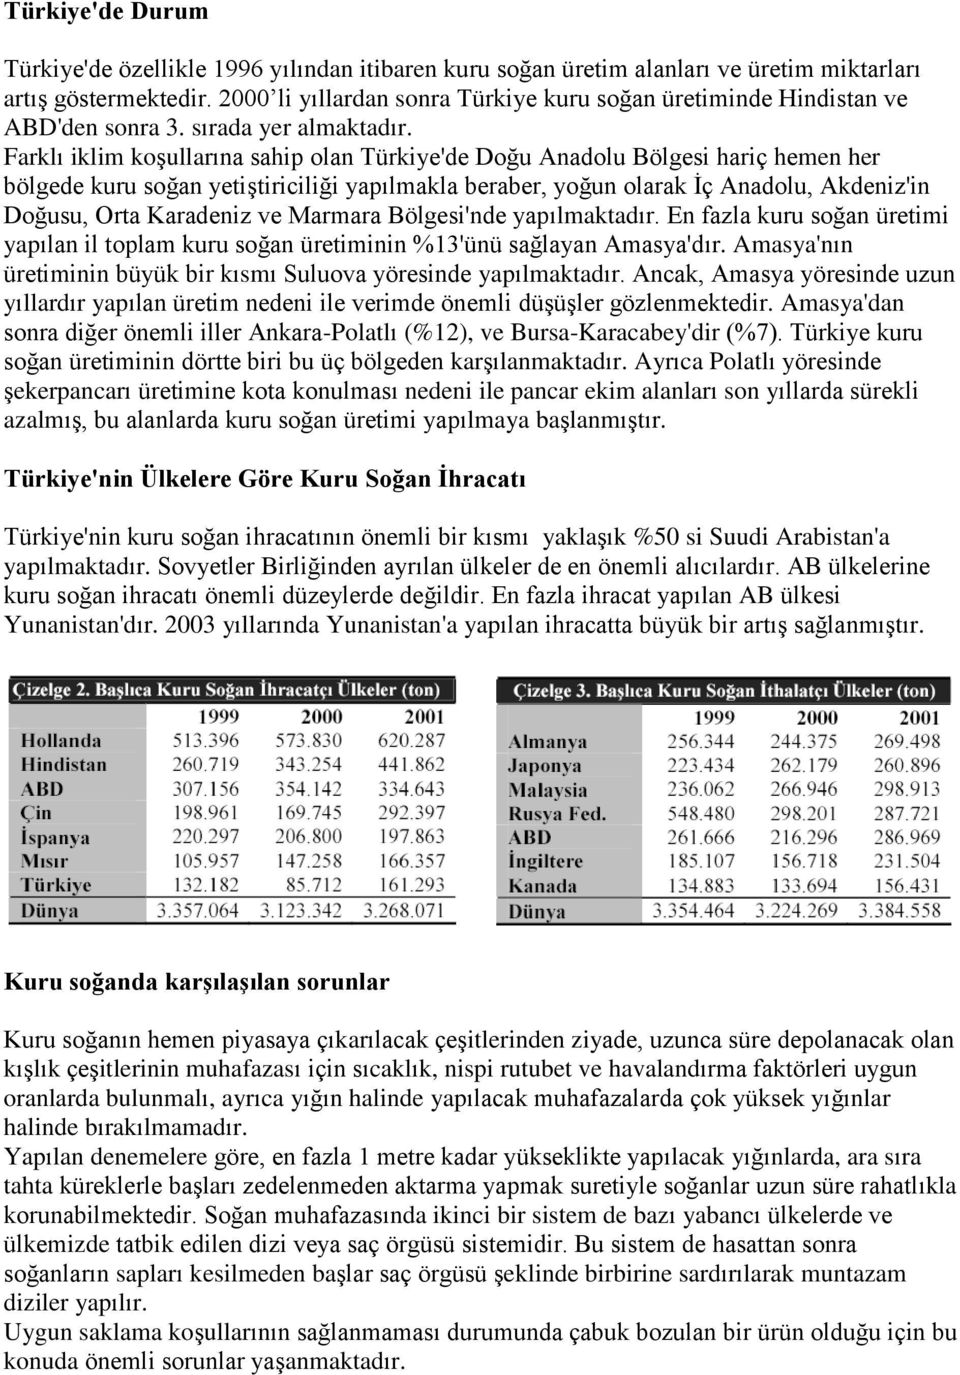 Farklı iklim koşullarına sahip olan Türkiye'de Doğu Anadolu Bölgesi hariç hemen her bölgede kuru soğan yetiştiriciliği yapılmakla beraber, yoğun olarak İç Anadolu, Akdeniz'in Doğusu, Orta Karadeniz